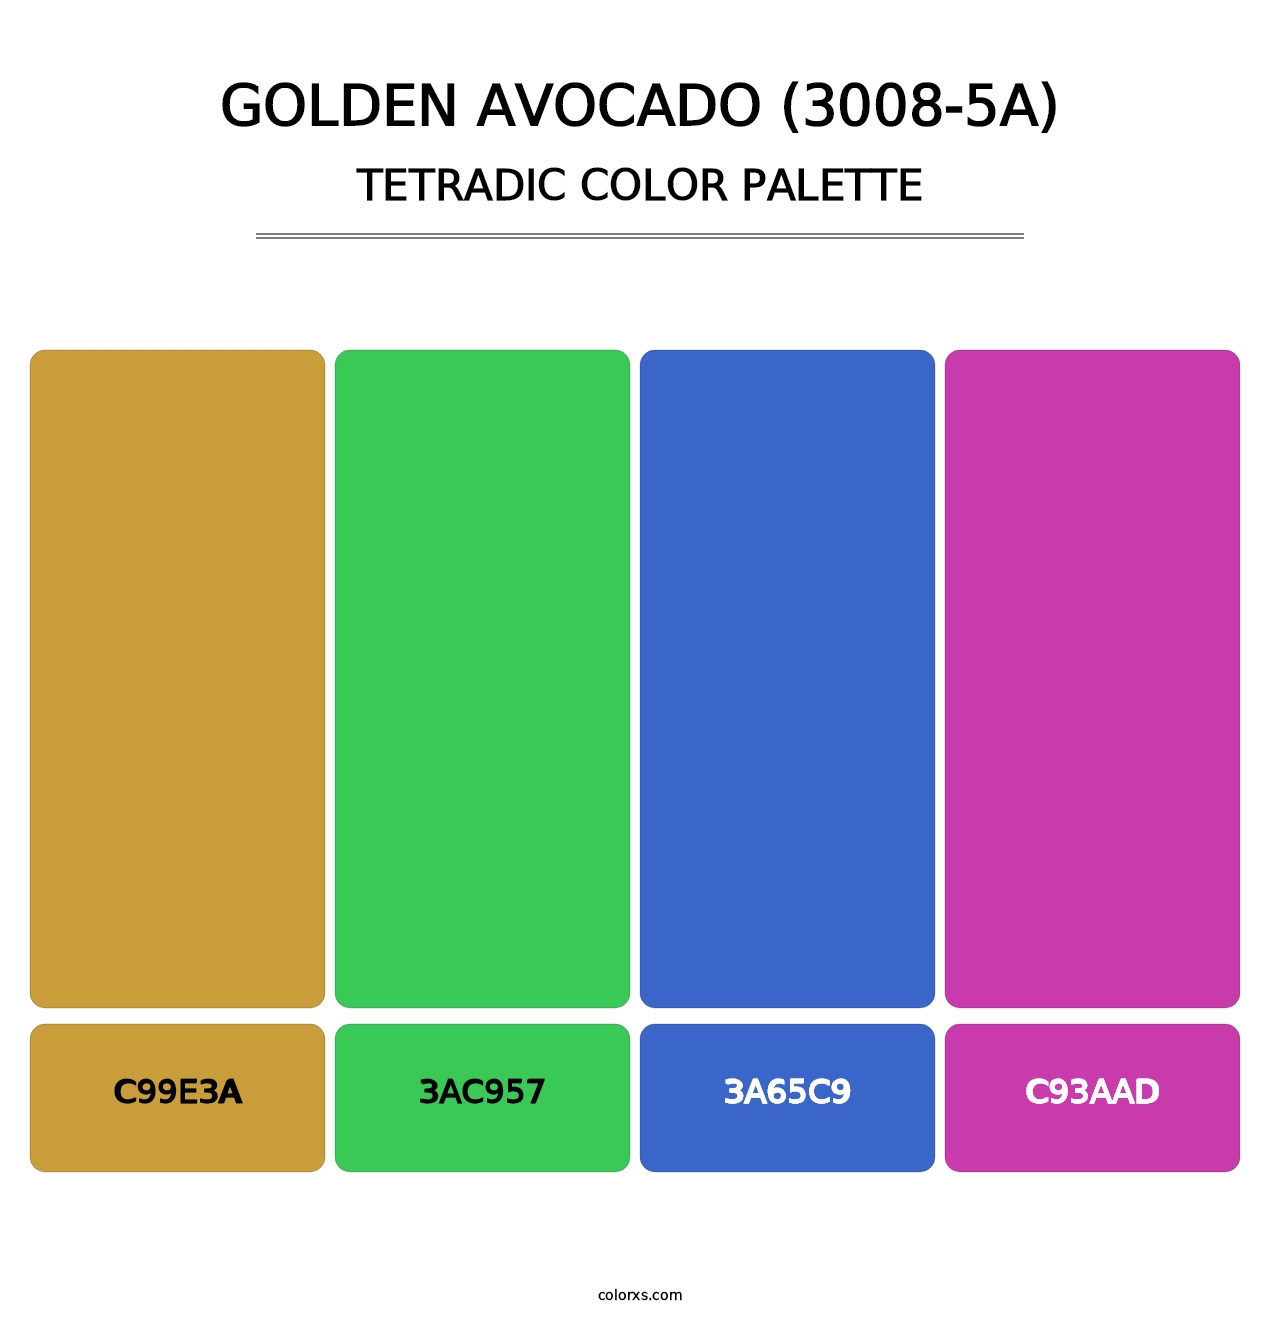 Golden Avocado (3008-5A) - Tetradic Color Palette